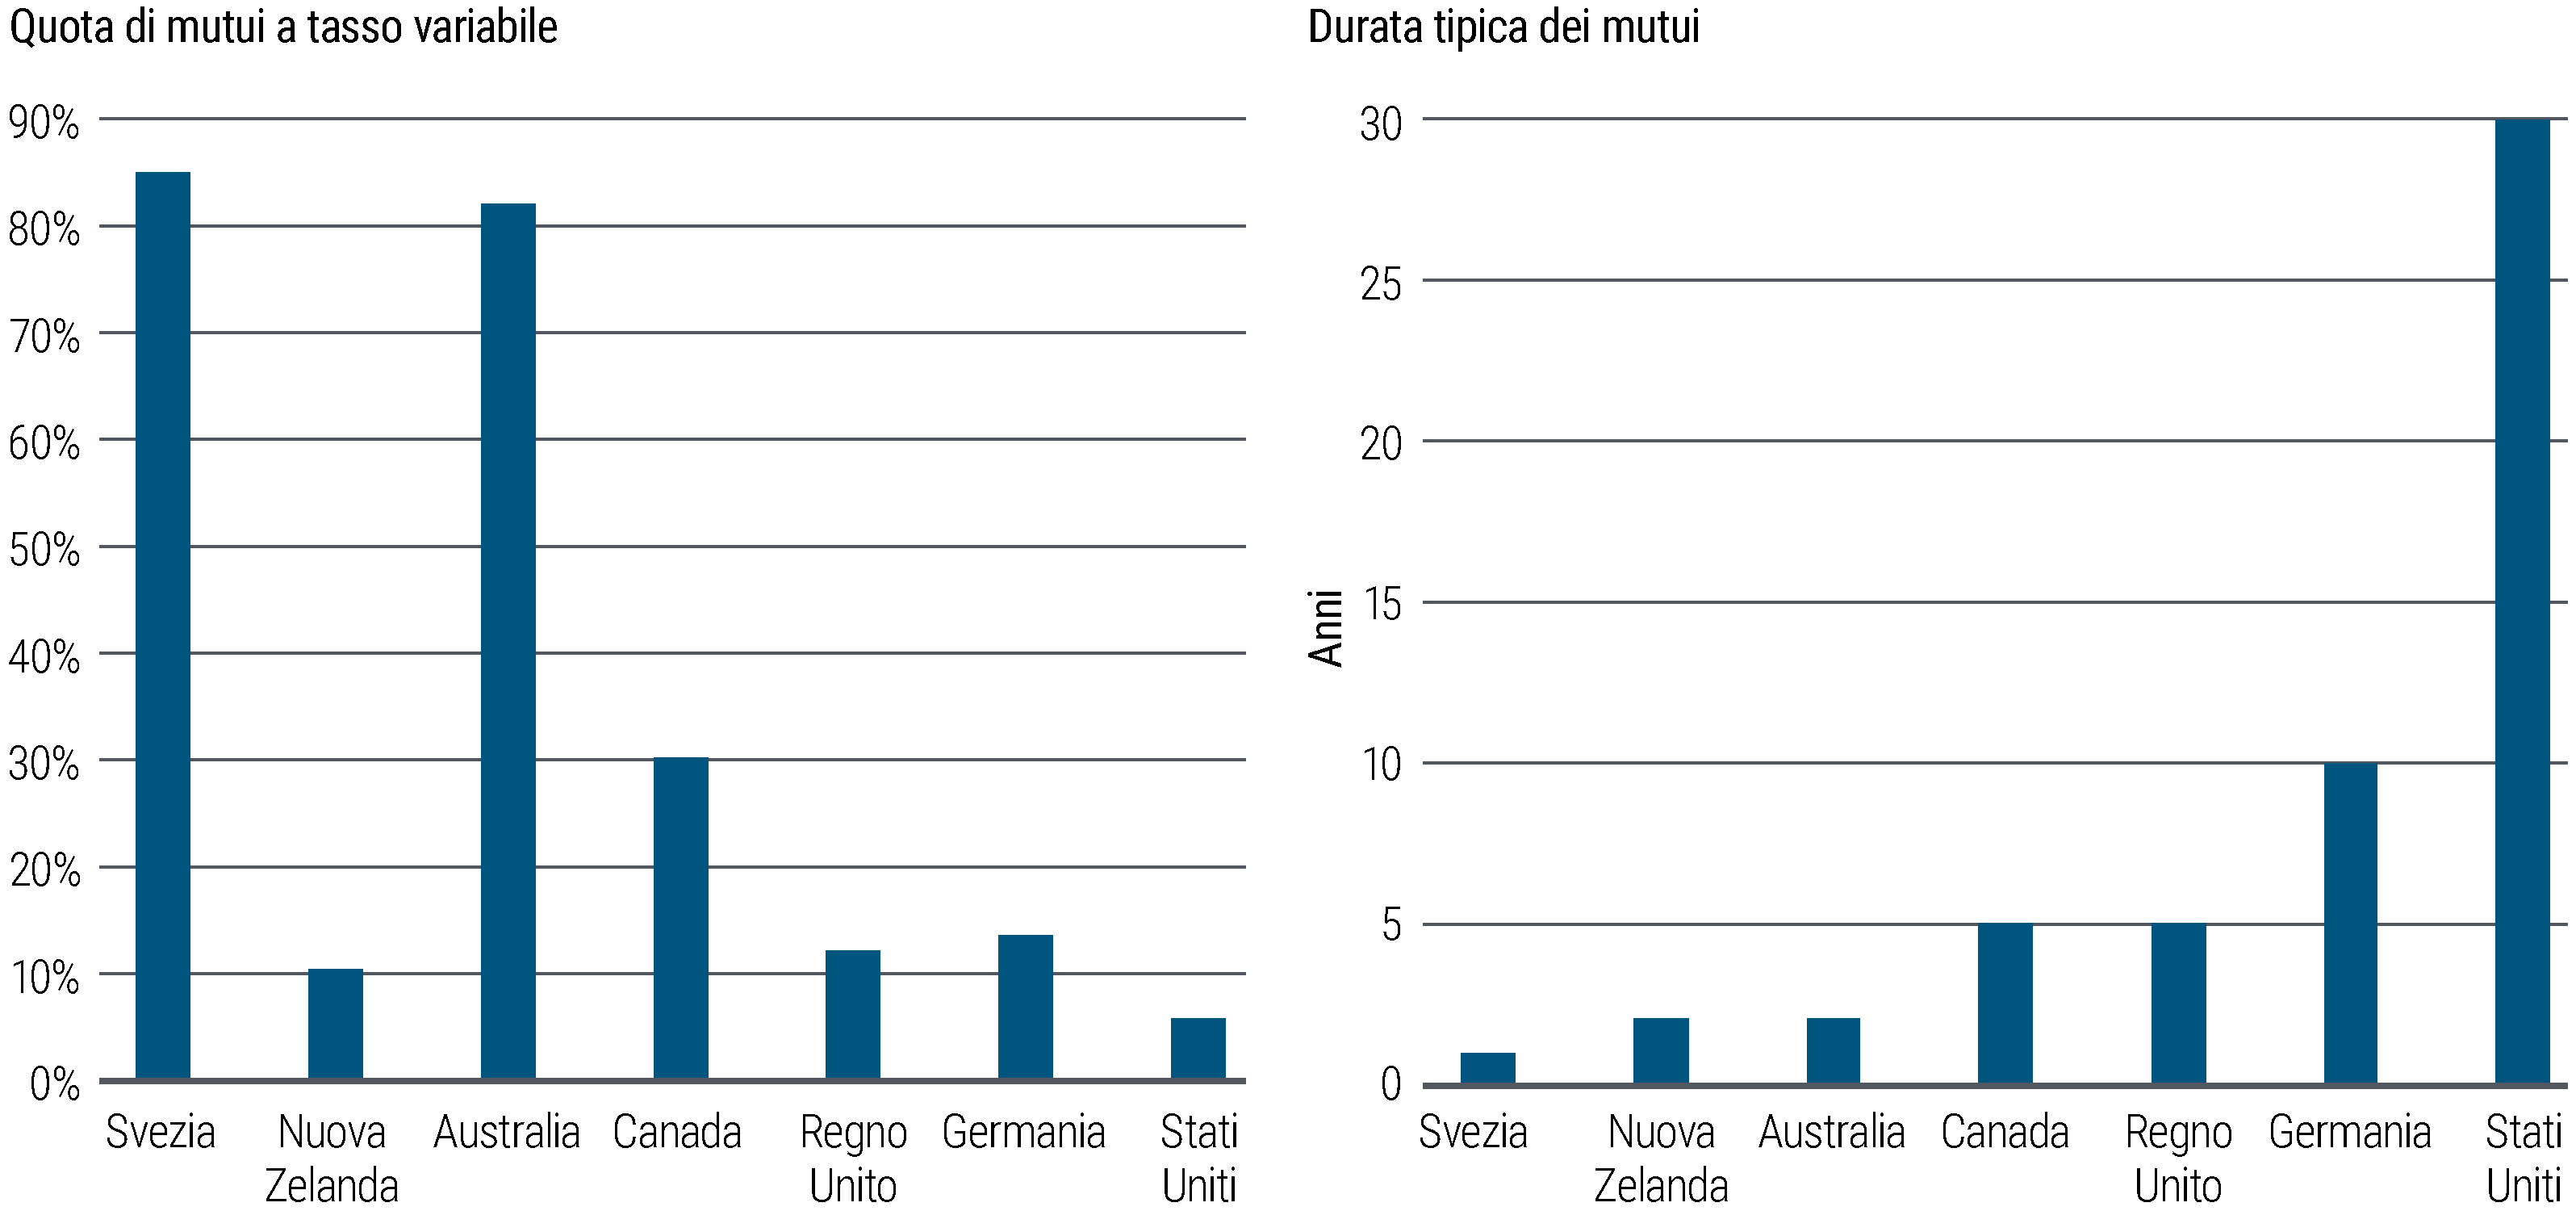 La Figura 3 presenta due grafici a barre, posti uno accanto all’altro. Il grafico a sinistra mostra la quota di mutui a tasso variabile (in percentuale rispetto al totale dei mutui) in diversi paesi dei mercati sviluppati. I mutui a tasso variabile sono oltre l’80% in Svezia e Australia; intorno al 30% in Canada; nell’ordine del 10%–15% in Nuova Zelanda, Germania e nel Regno Unito; e circa il 6% negli Stati Uniti. Il grafico a destra mostra la durata tipica dei mutui nei medesimi paesi, che è pari a: 1 anno in Svezia, 2 anni in Australia e Nuova Zelanda, 5 anni nel Regno Unito e in Canada, 10 anni in Germania, e 30 anni negli Stati Uniti. Le fonti dei dati sono gli istituti nazionali di statistica e le banche centrali; i dati sono a settembre 2023. 